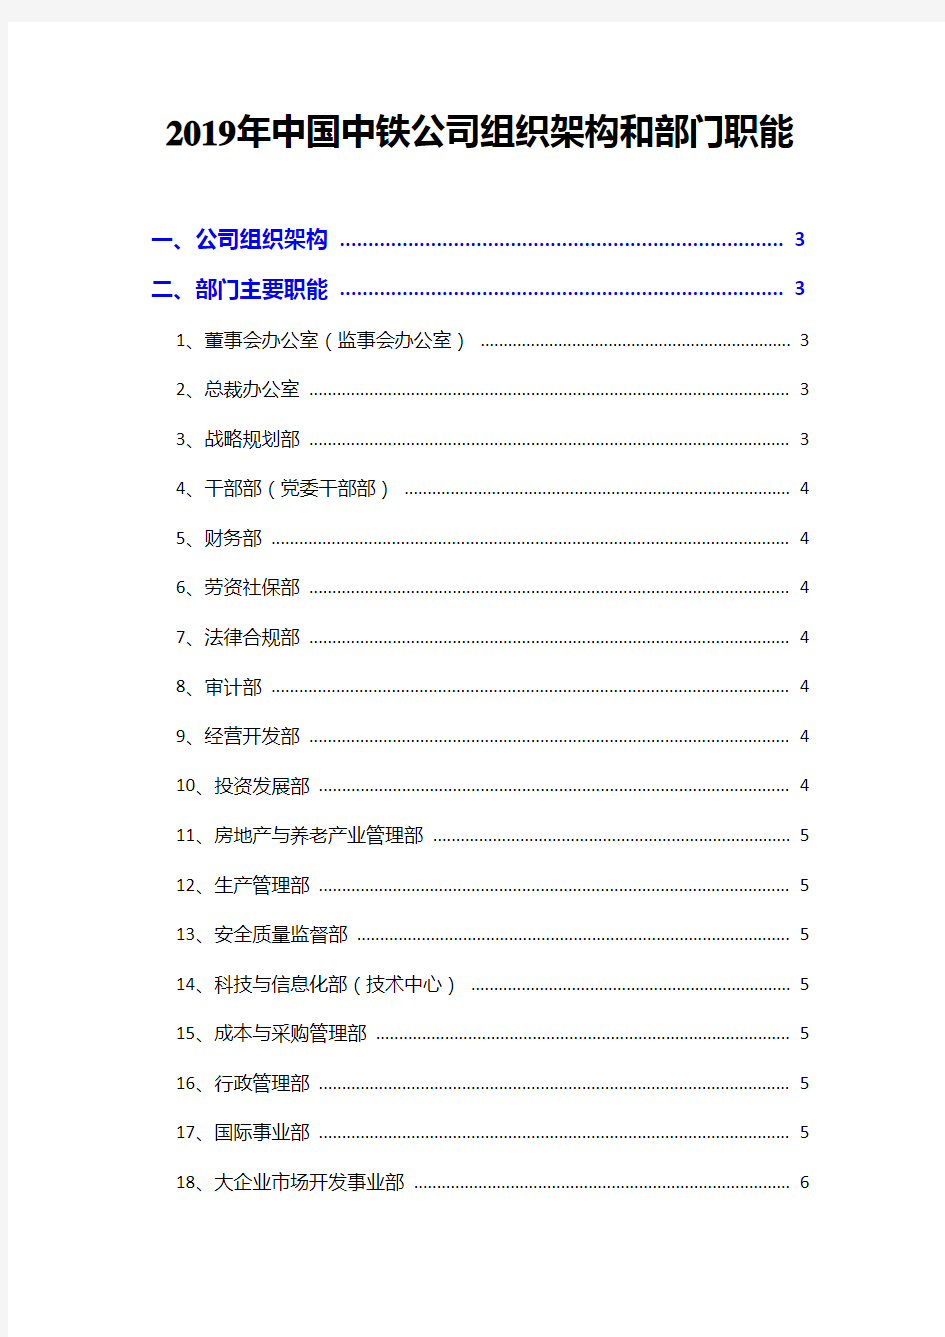 2019年中国中铁公司组织架构和部门职能